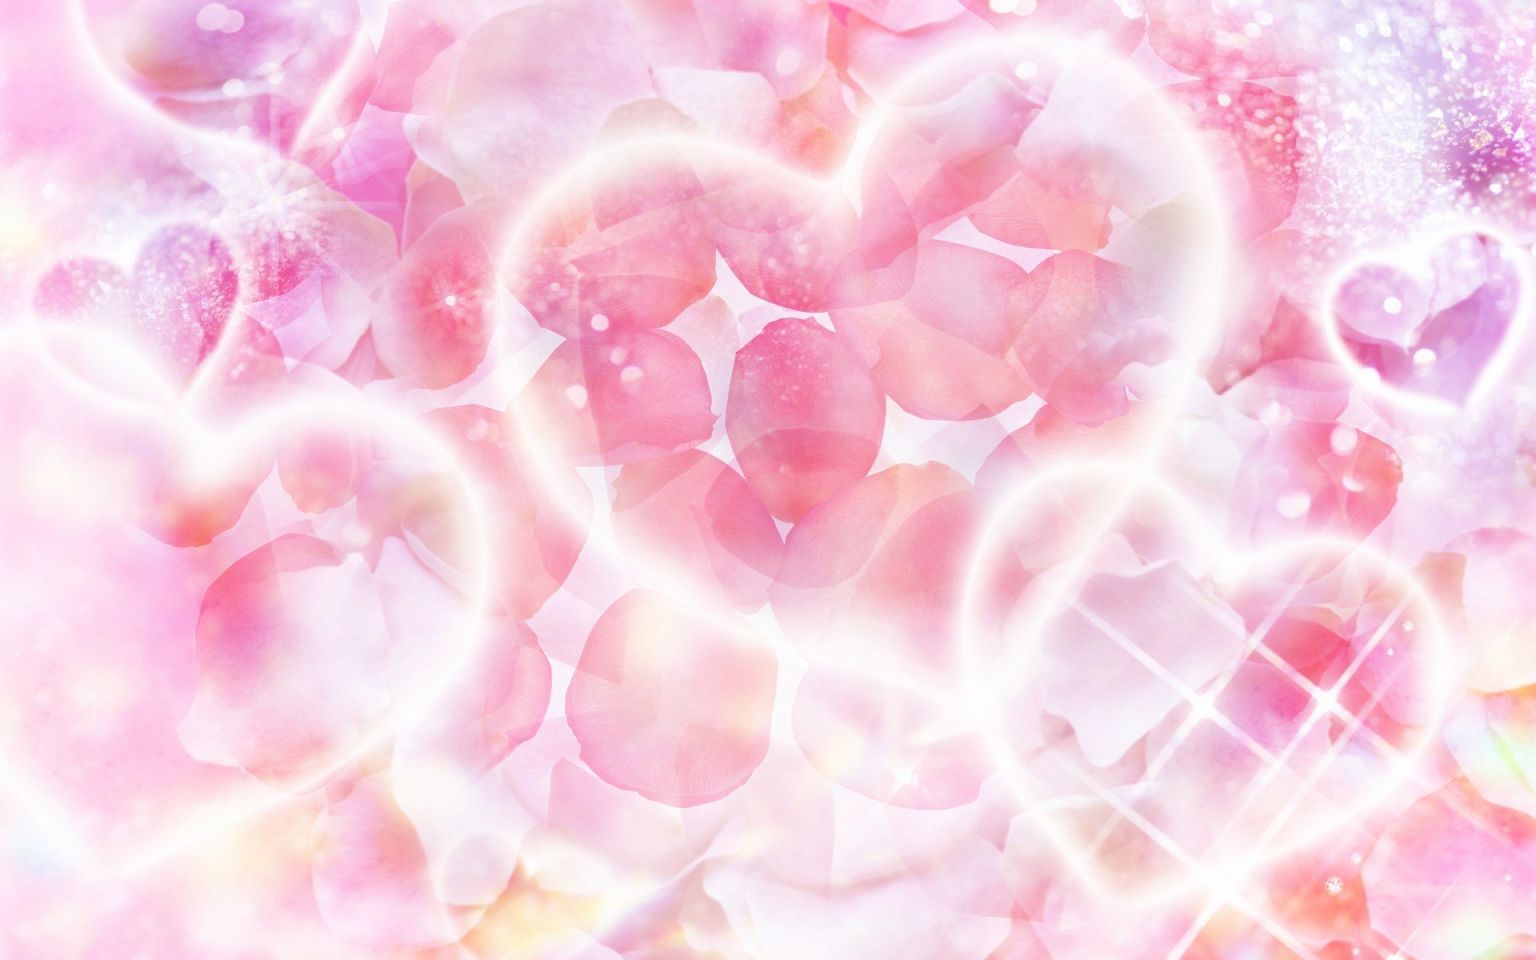 Розовый фон с сердечками для фотошопа